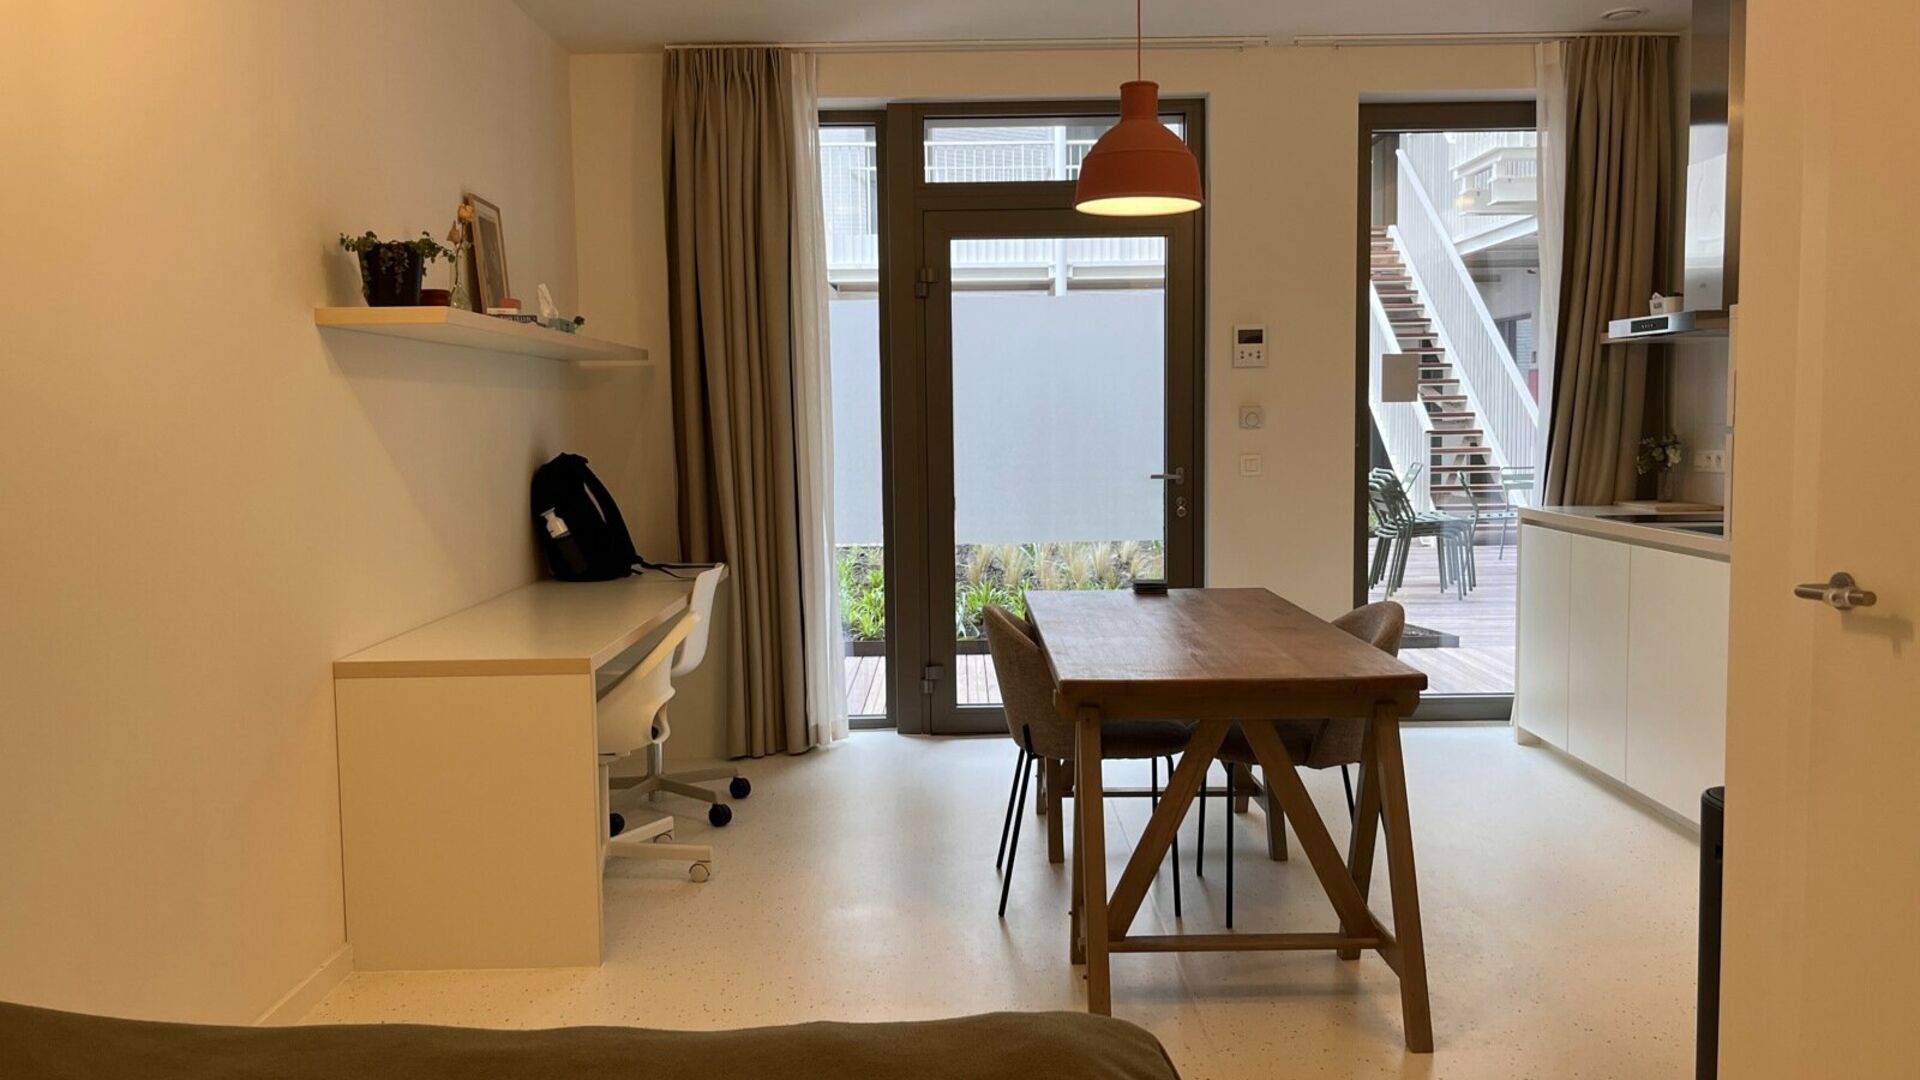 La résidence YOU, située au milieu de la Bondgenotenlaan, est le nouveau lieu de prédilection des étudiants. Ce studio confortable est situé à l'arrière, en rez-de-jardin, et mesure 28 m². Le studio comprend un bureau, une table à manger, une cui